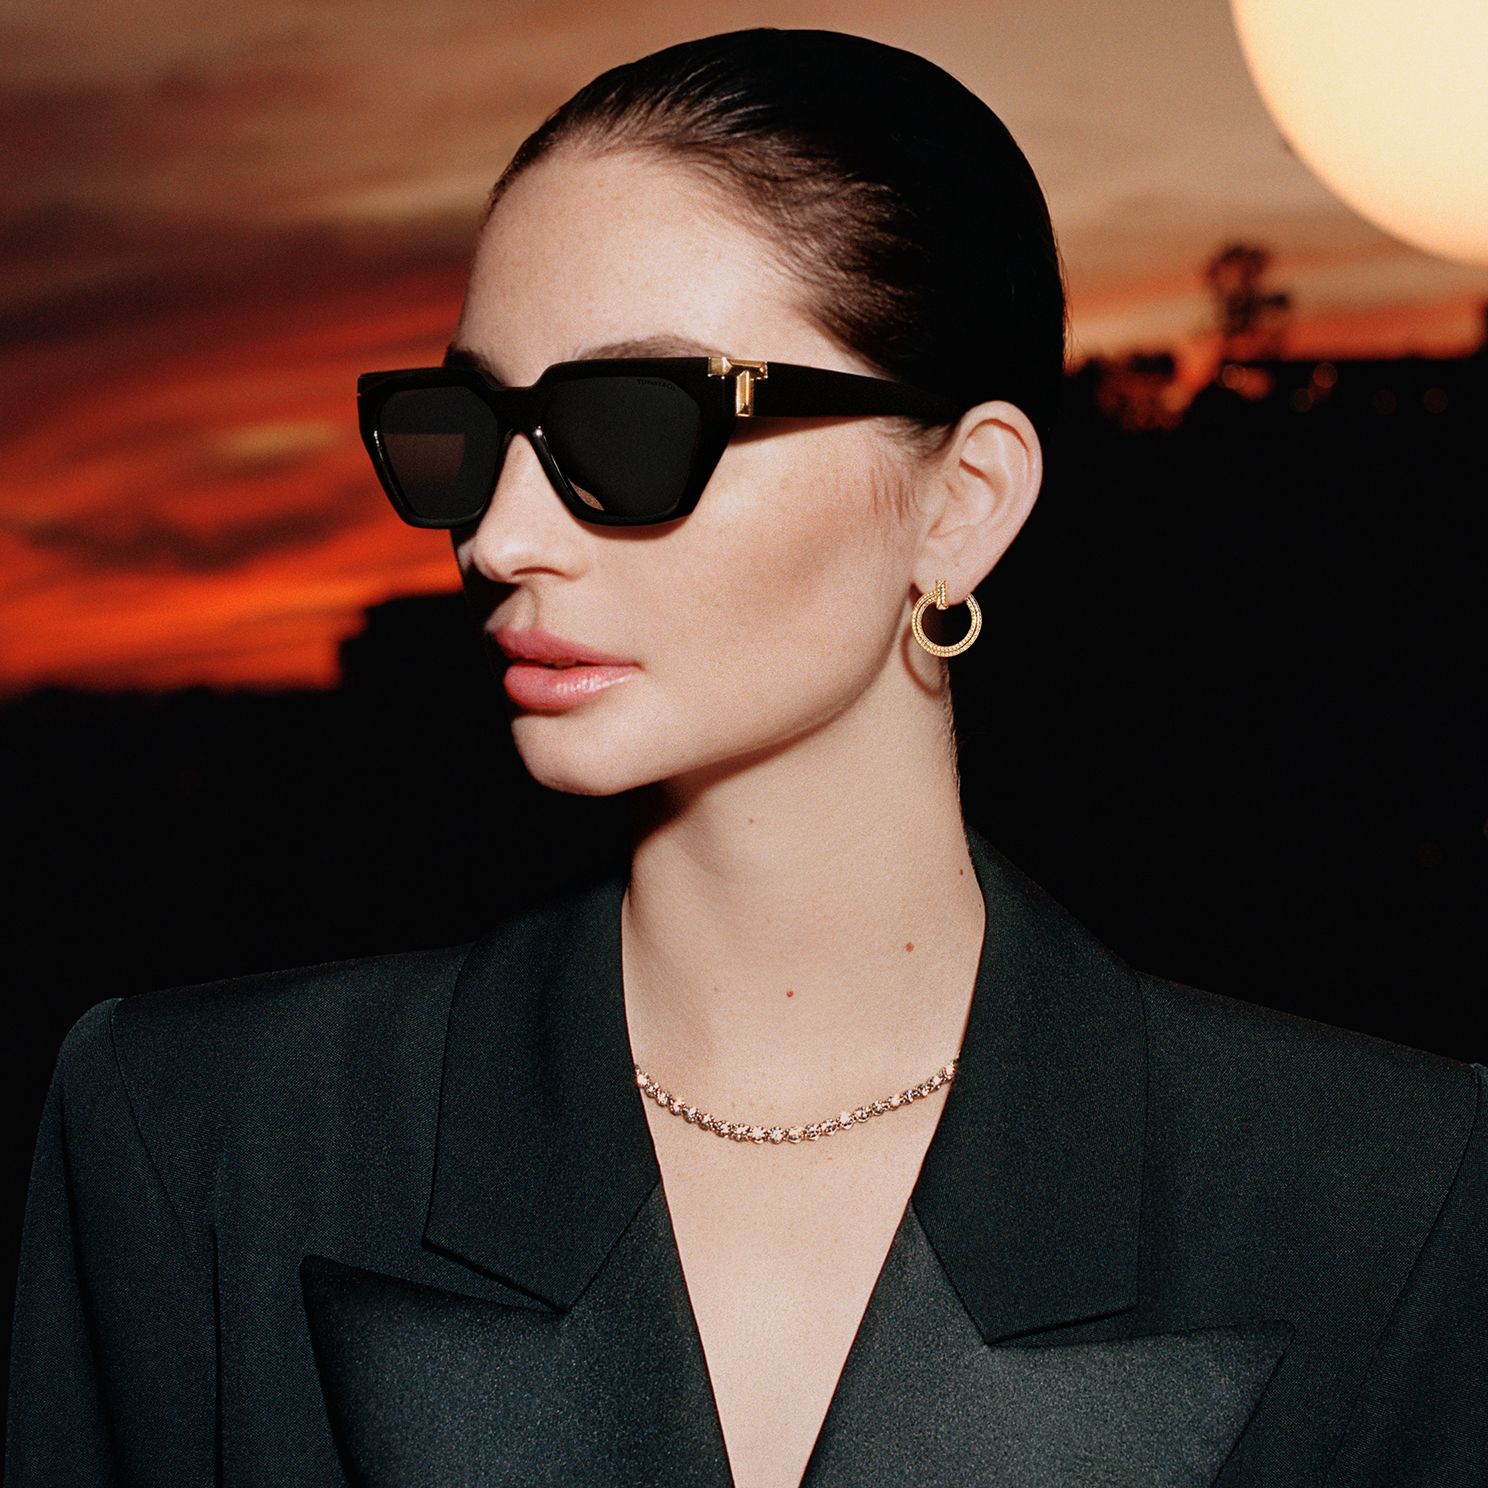 设计感十足的太阳镜和眼镜| Tiffany & Co.